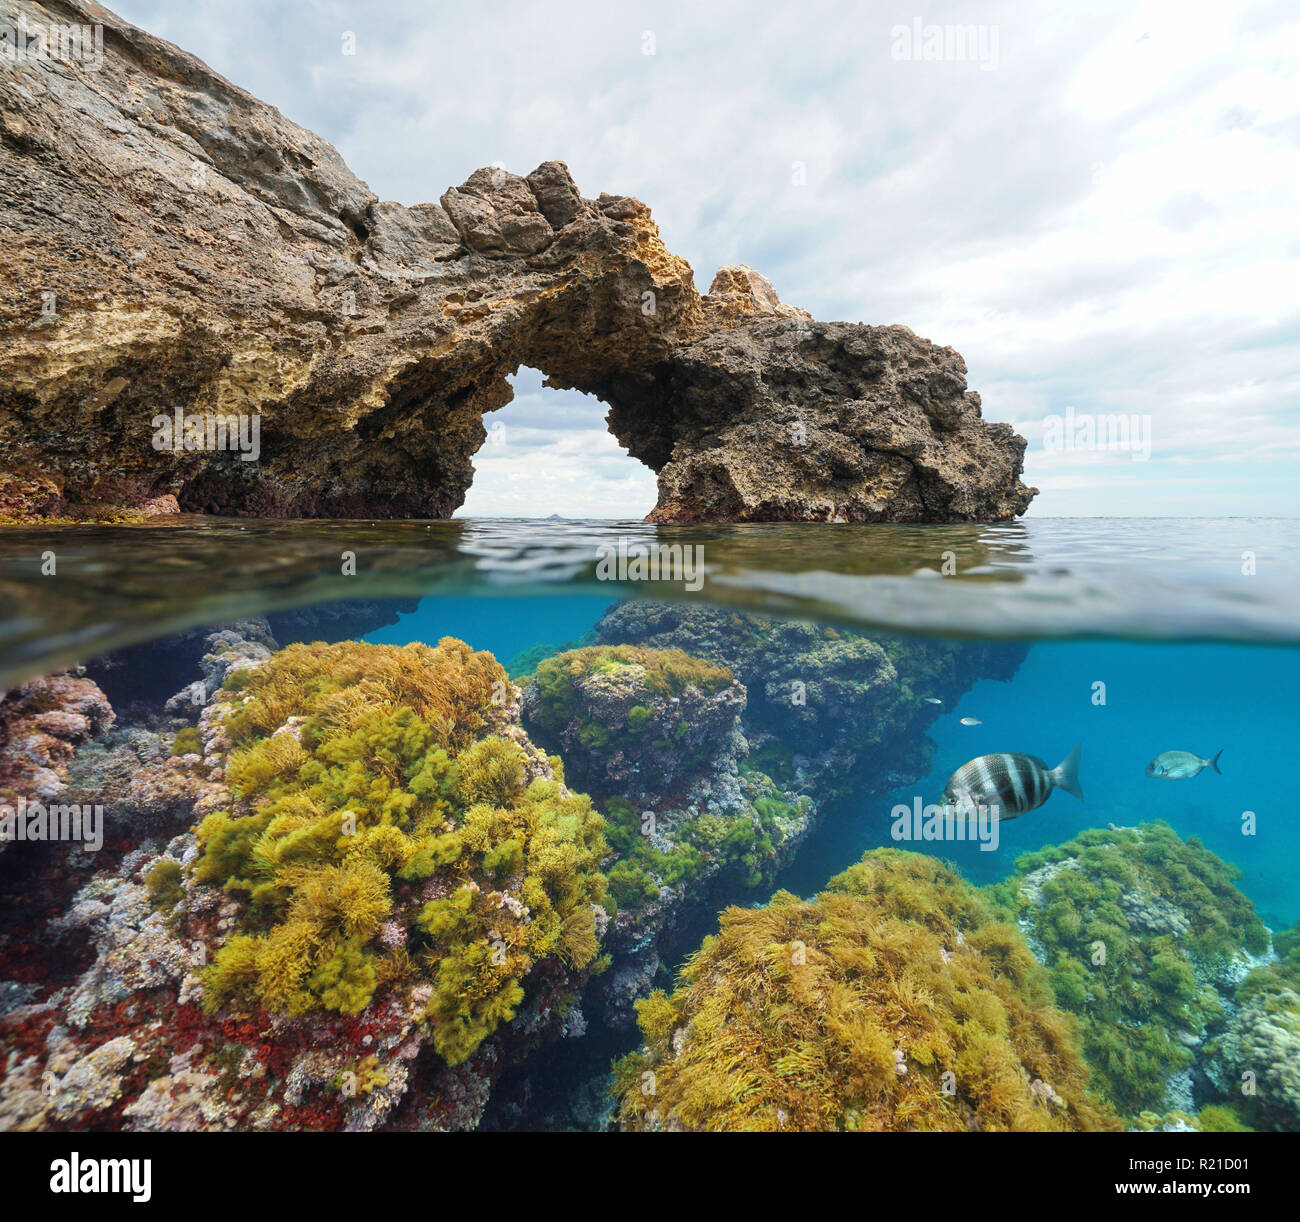 Formazione di roccia arco naturale con alghe e pesci subacquea, vista suddivisa per metà al di sopra e al di sotto della superficie dell'acqua, mare Mediterraneo, Cabo de Palos, Spagna Foto Stock